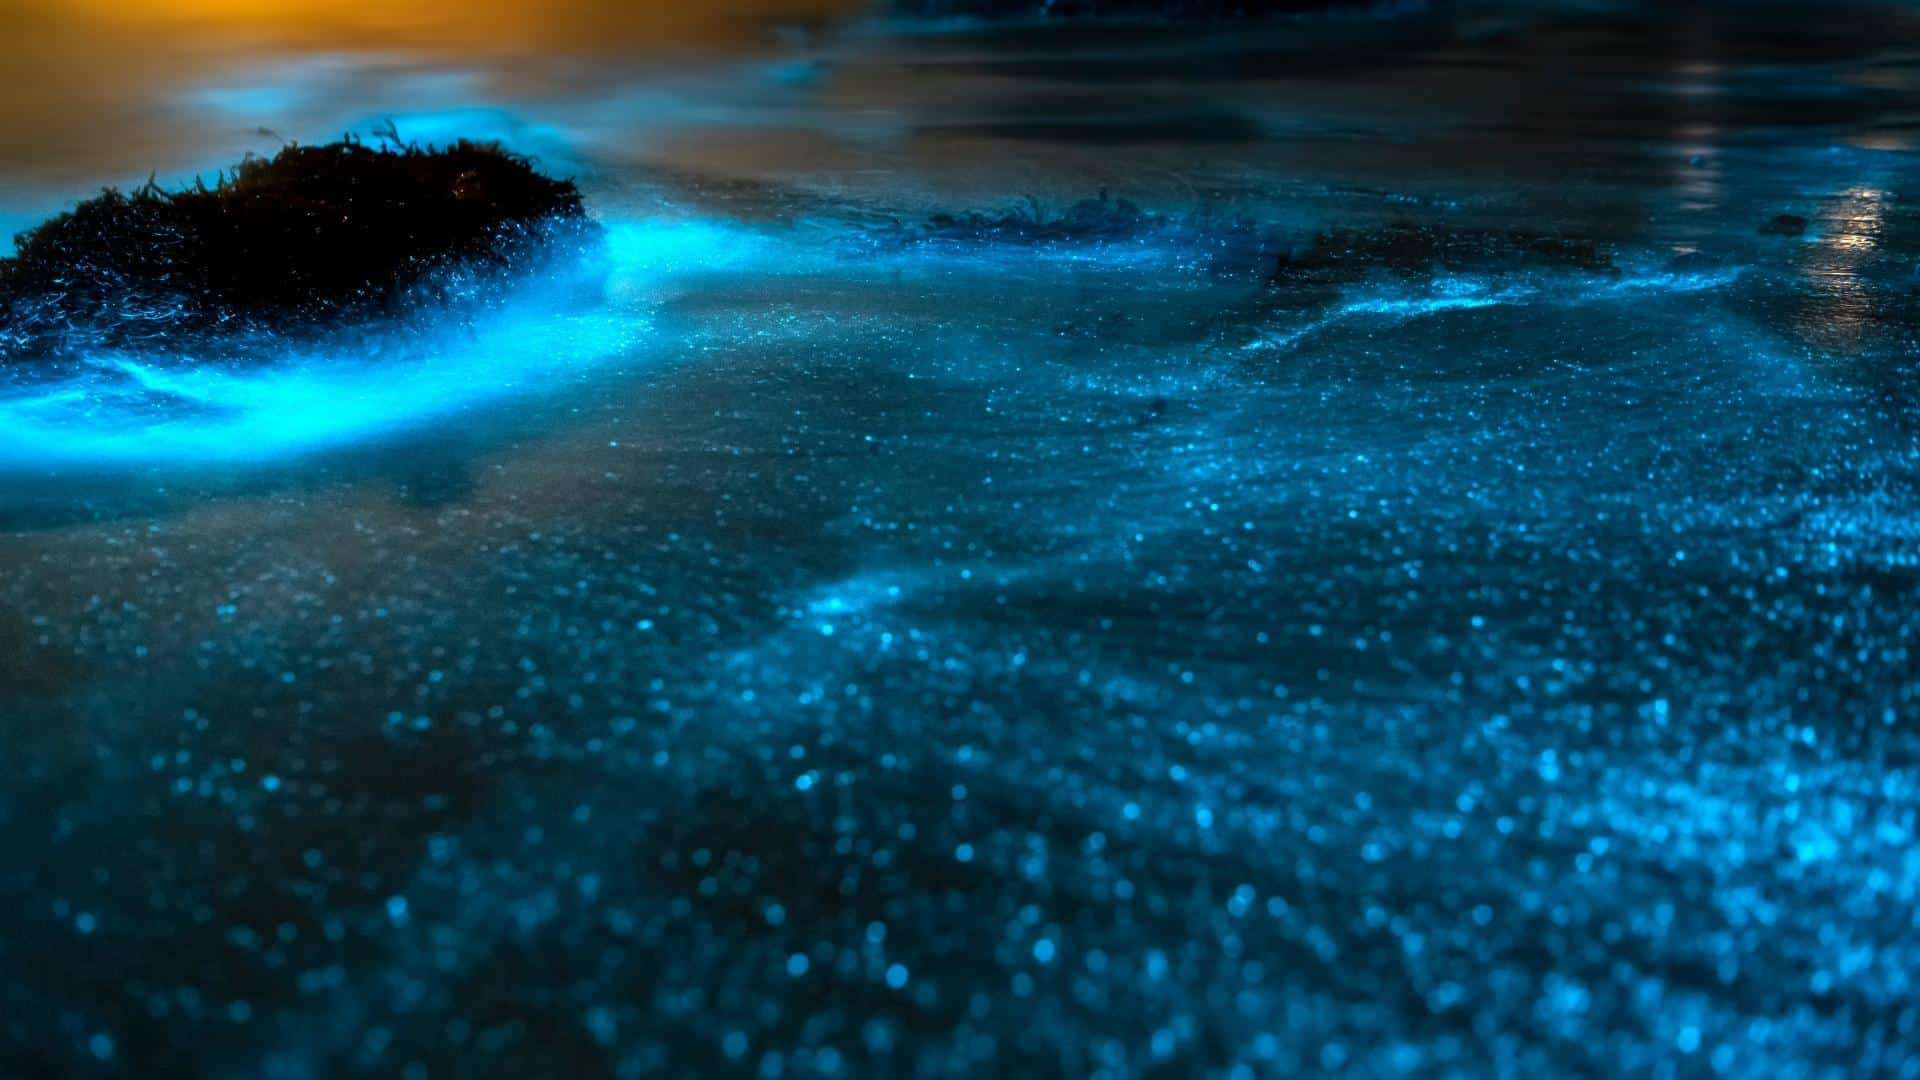 Bioluminescence in Florida